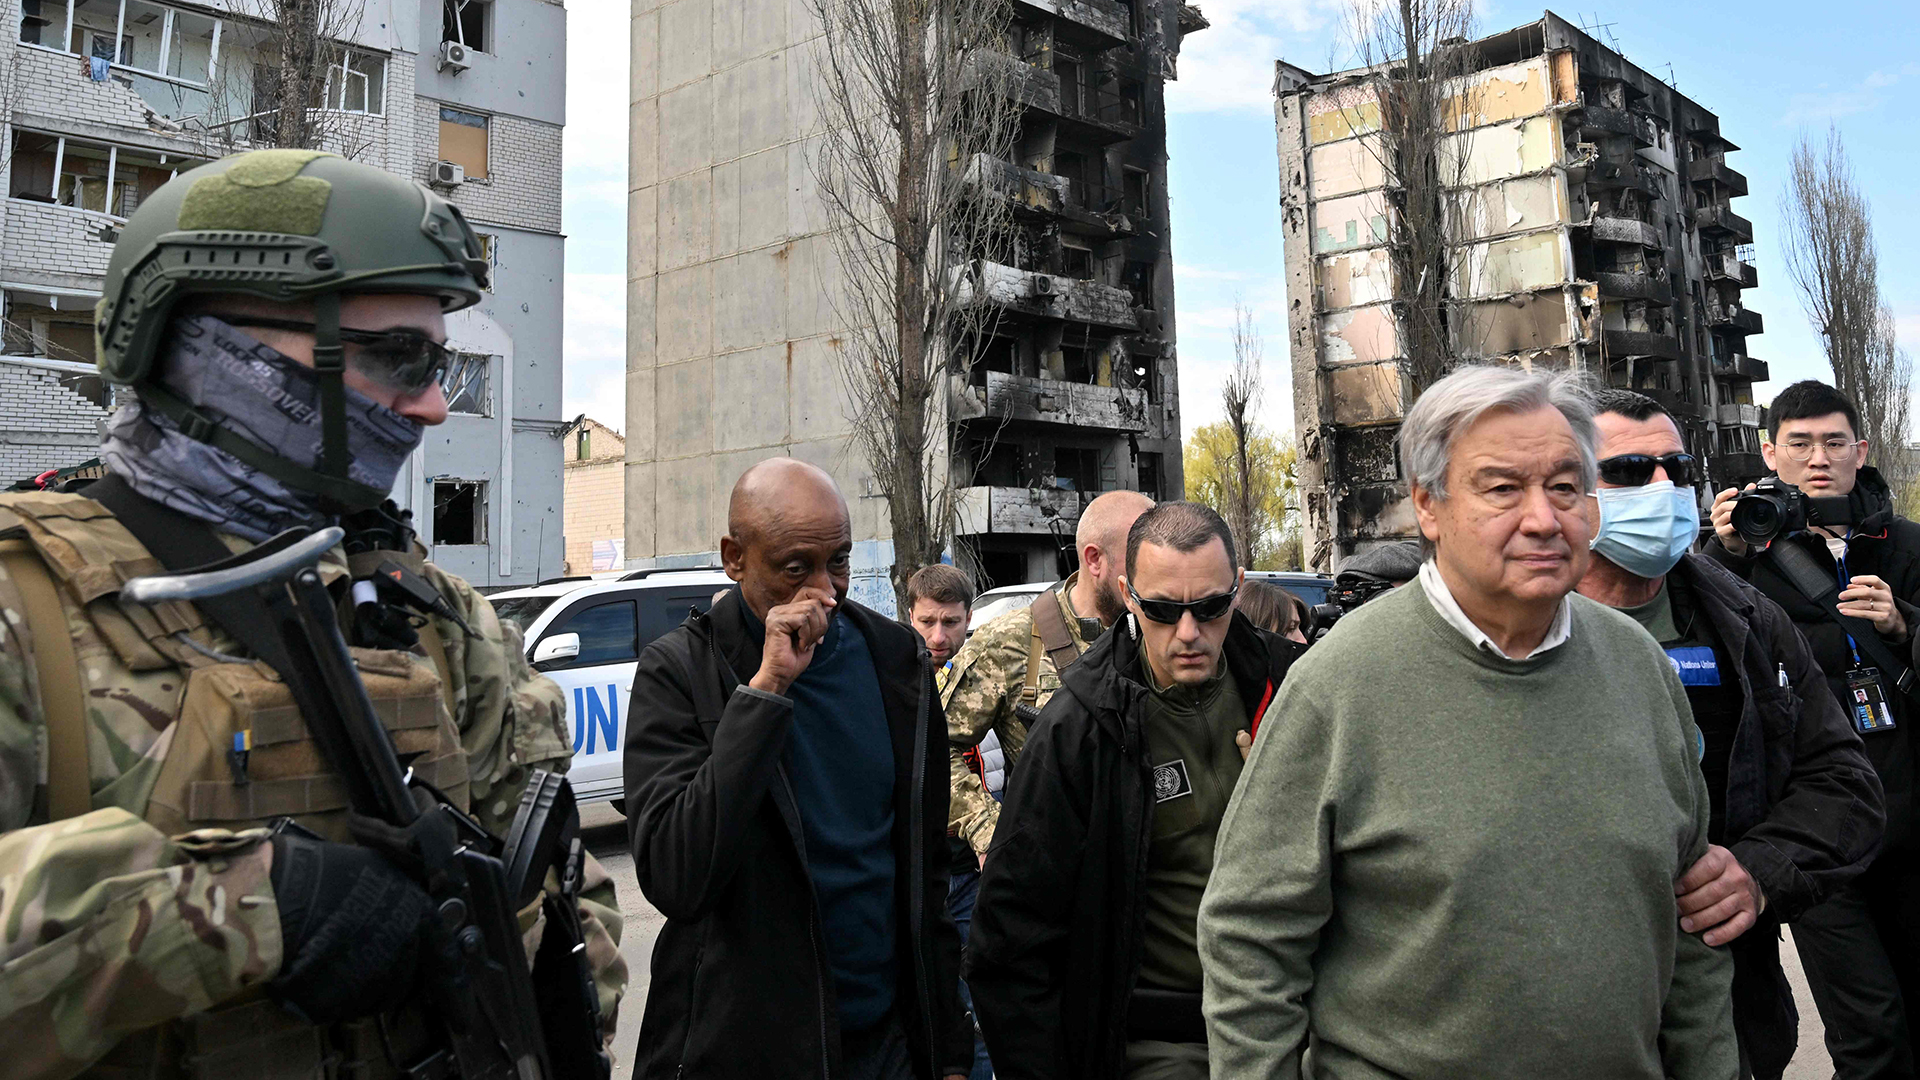 António Guterres besichtigt die zerstörte Siedlung Borodianka. | AFP